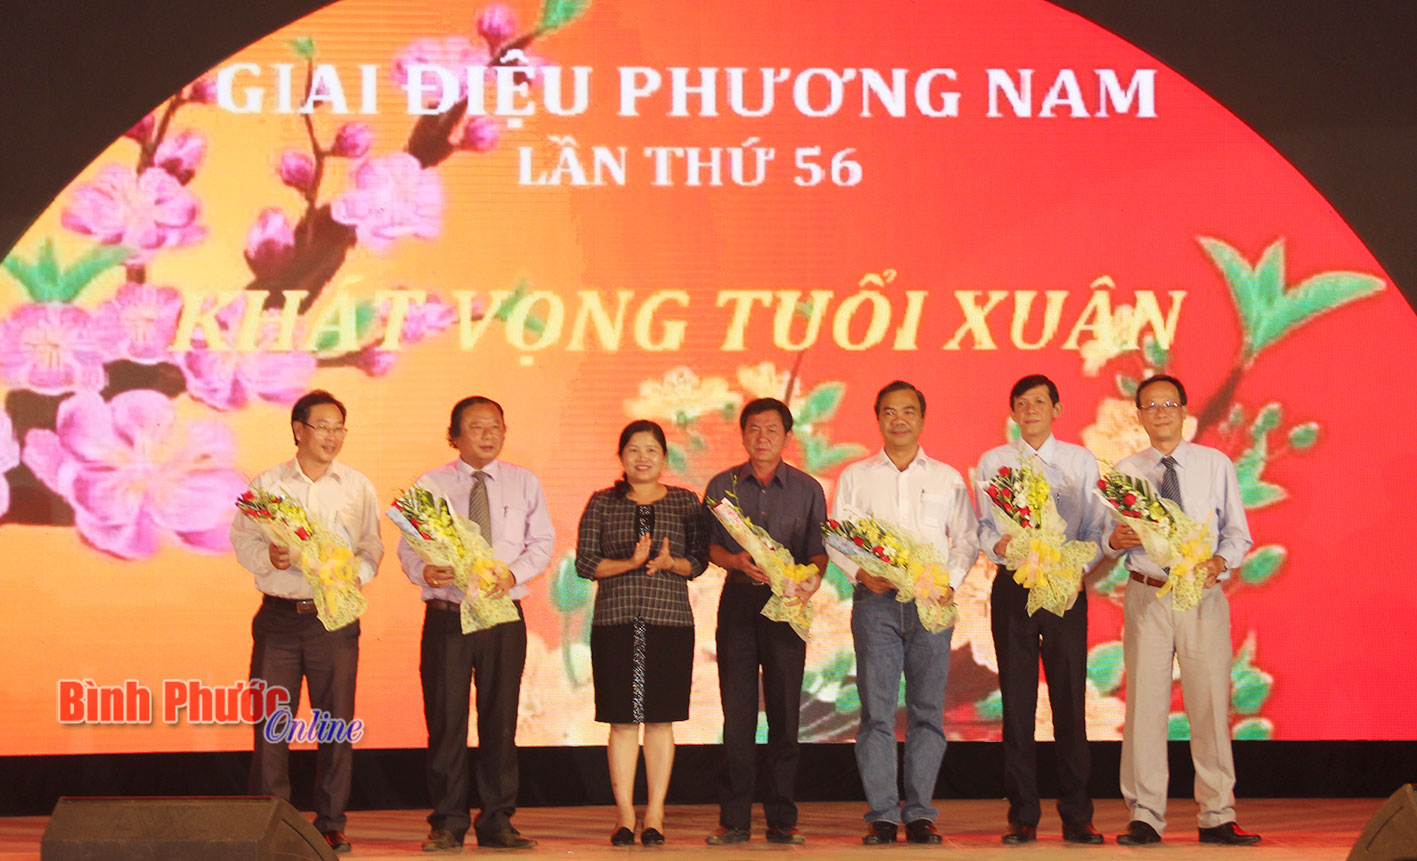 Phó bí thư thường trực Tỉnh ủy Trần Tuệ Hiền tặng hoa cho đại diện Ban tổ chức chương trình Giai điệu phương Nam